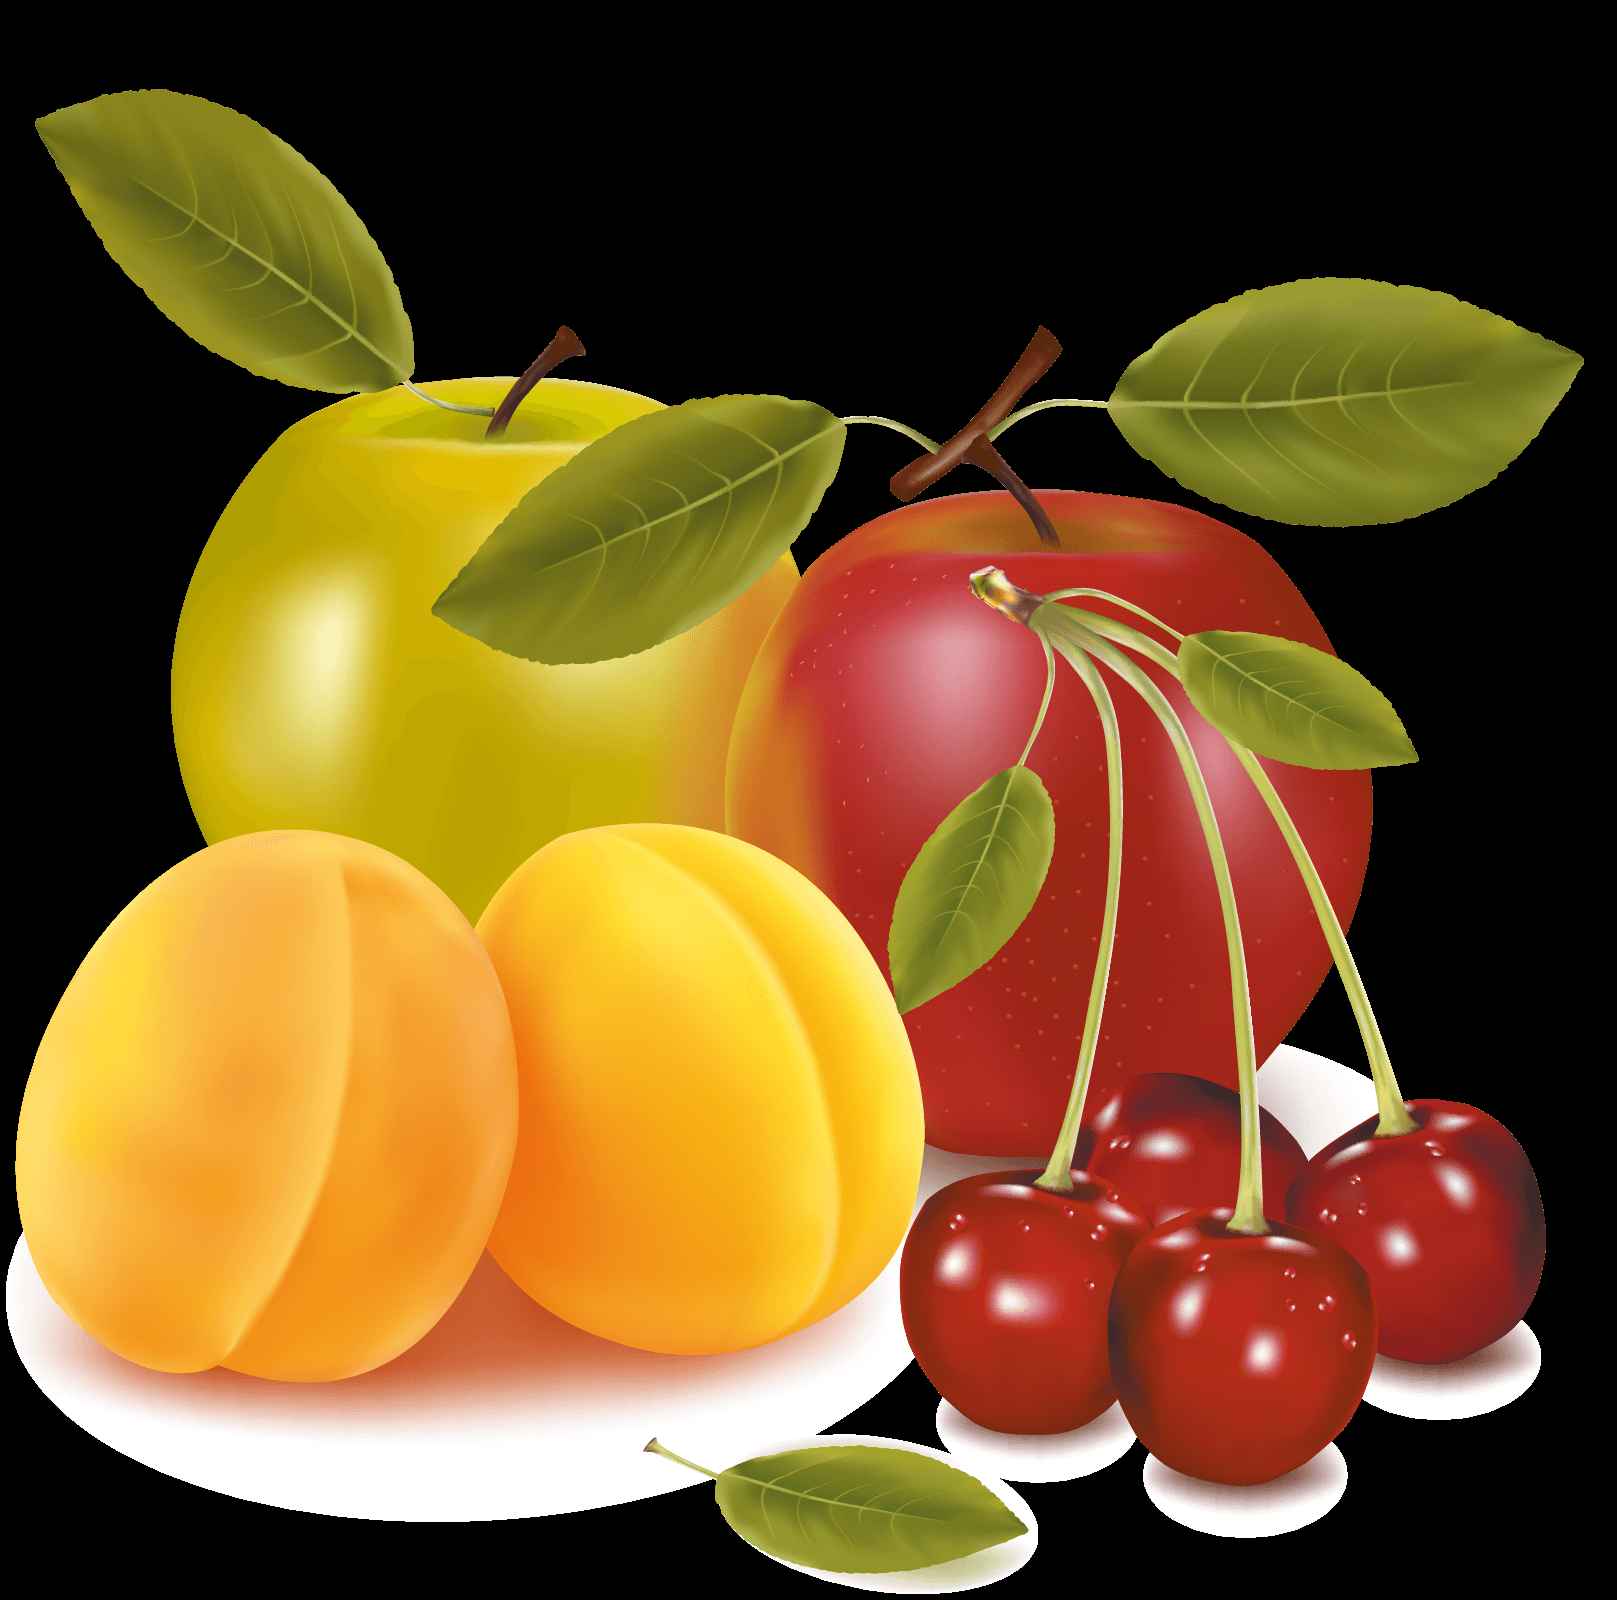 Cherry Apple Pear Vector Art